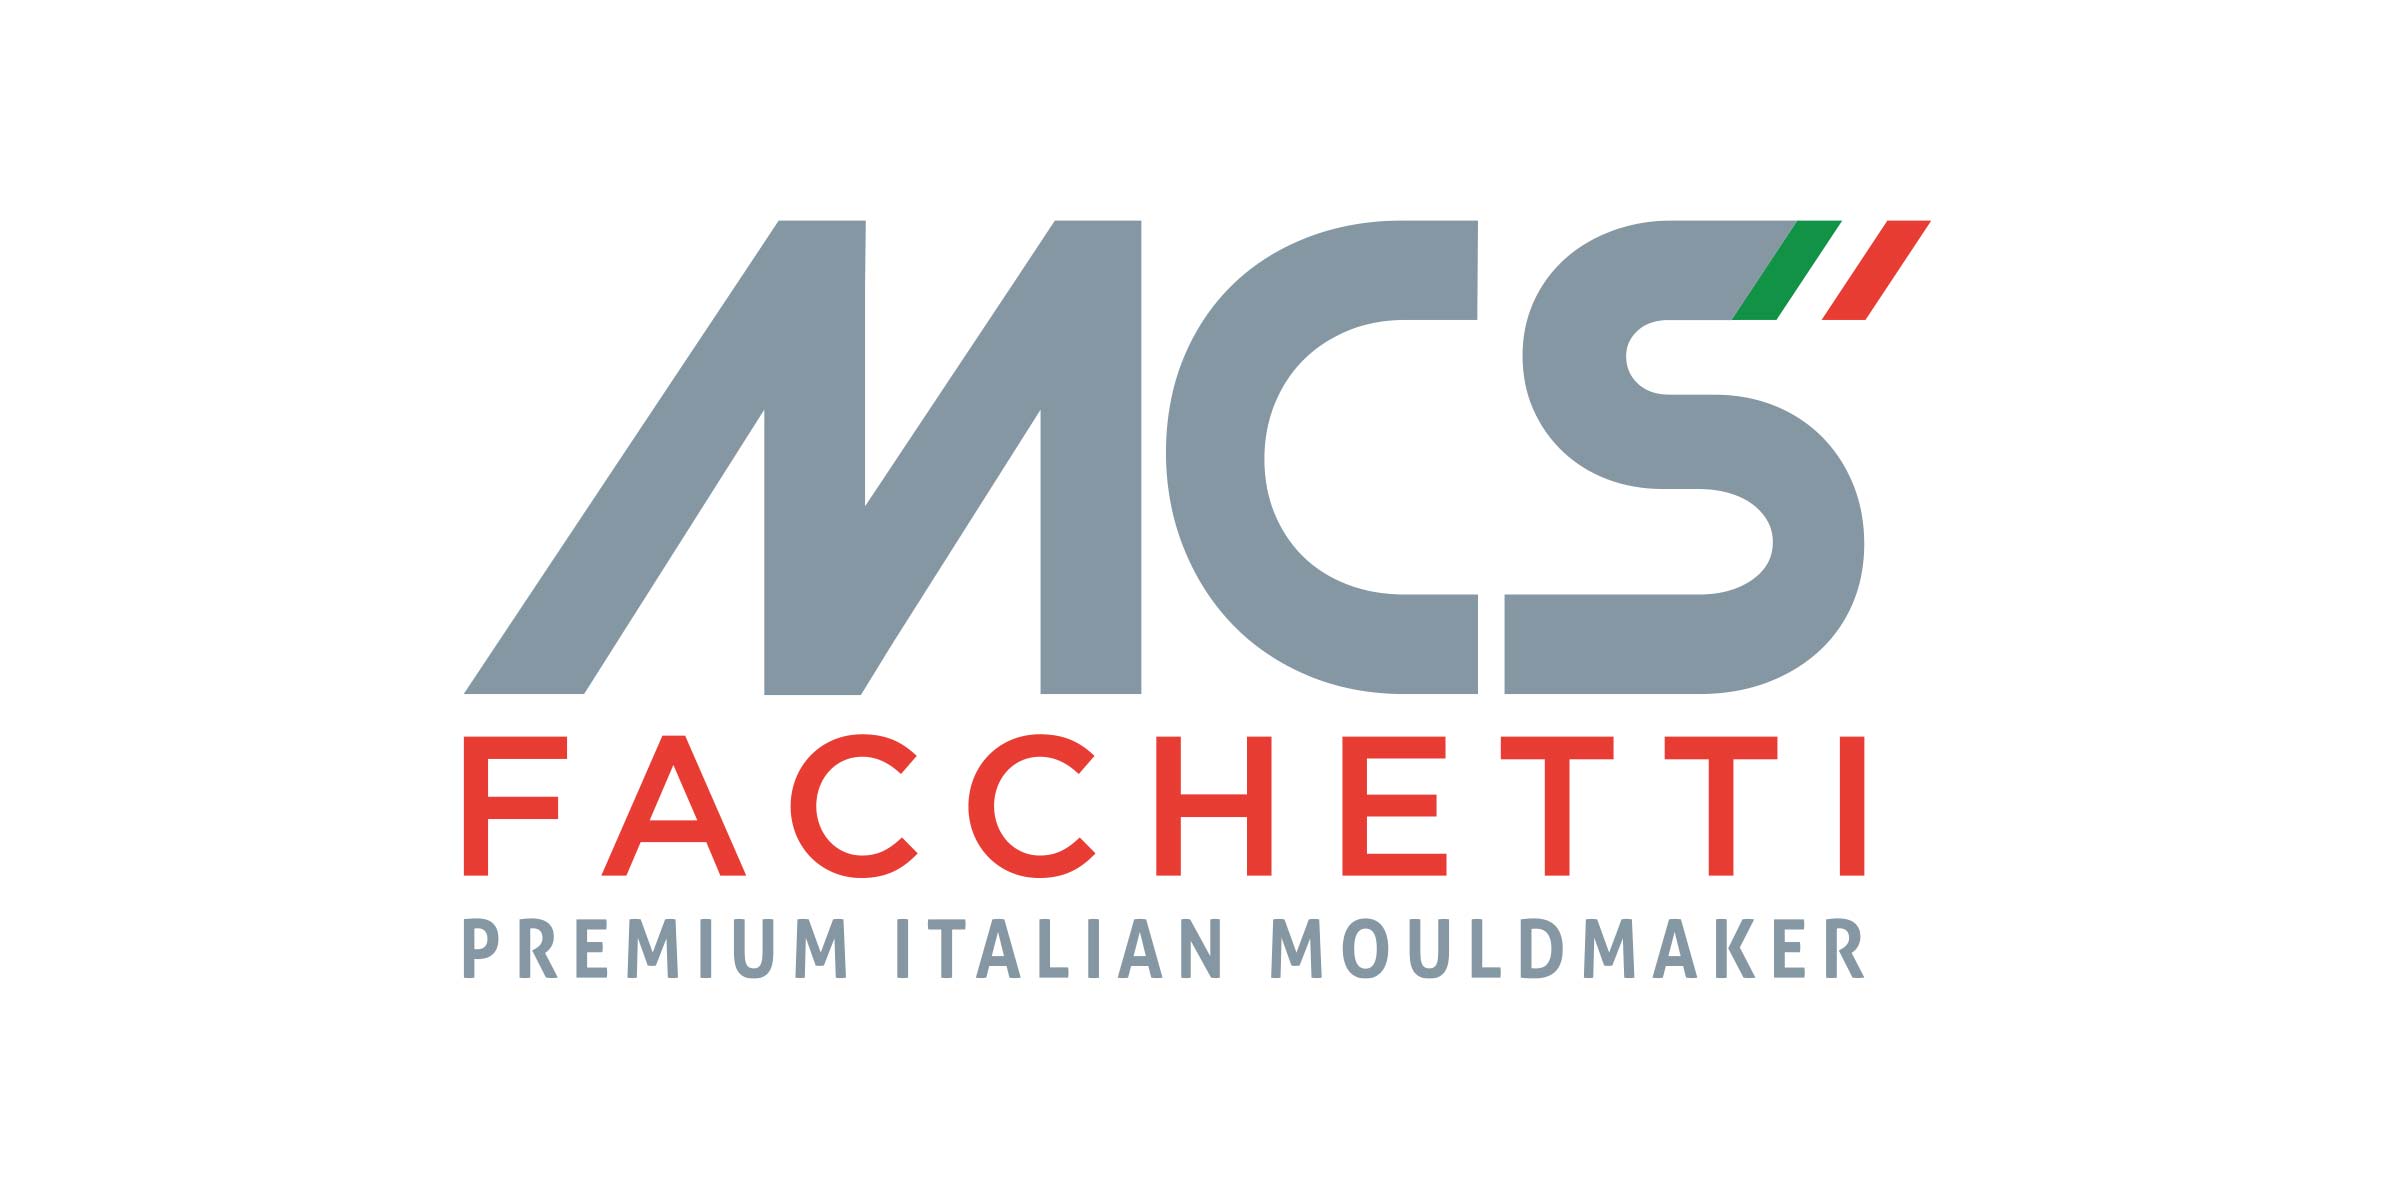 M.C.S. Facchetti